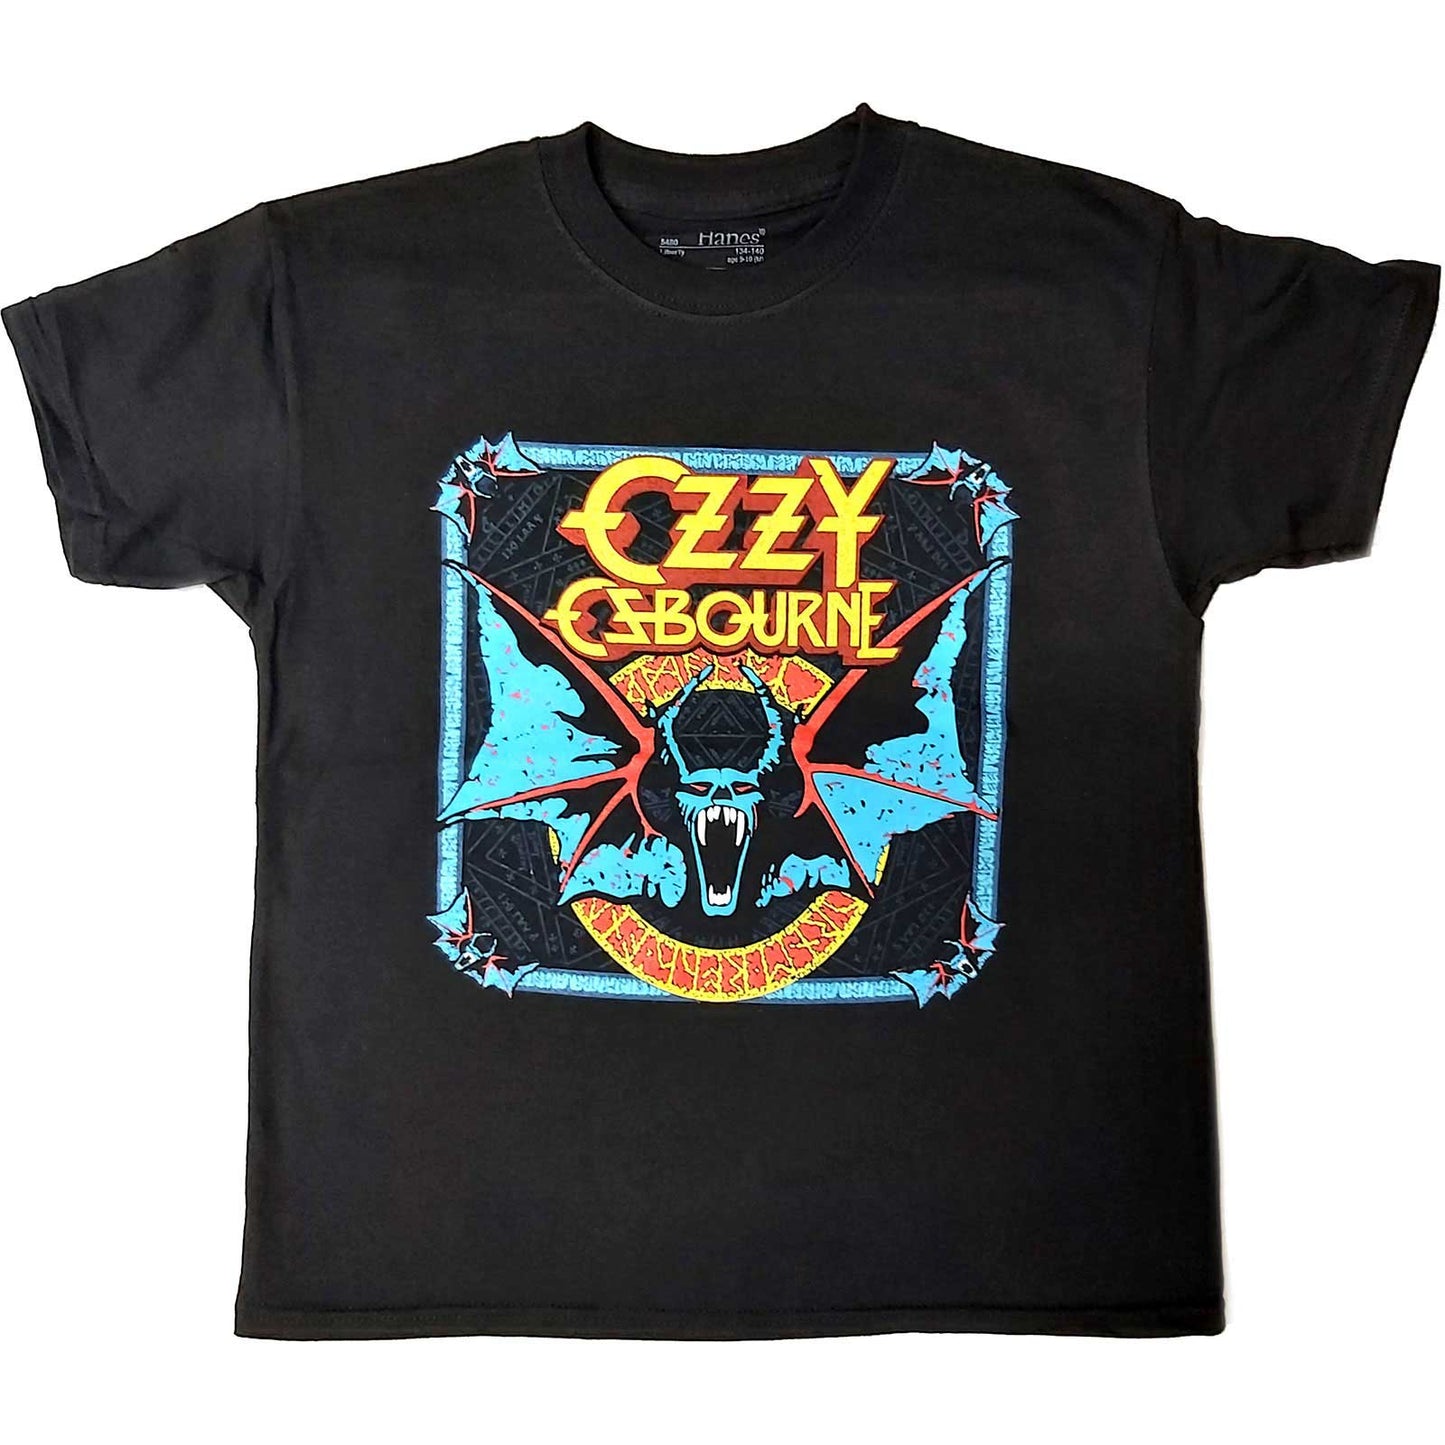 Ozzy Osbourne T-Shirt: Speak of the Devil